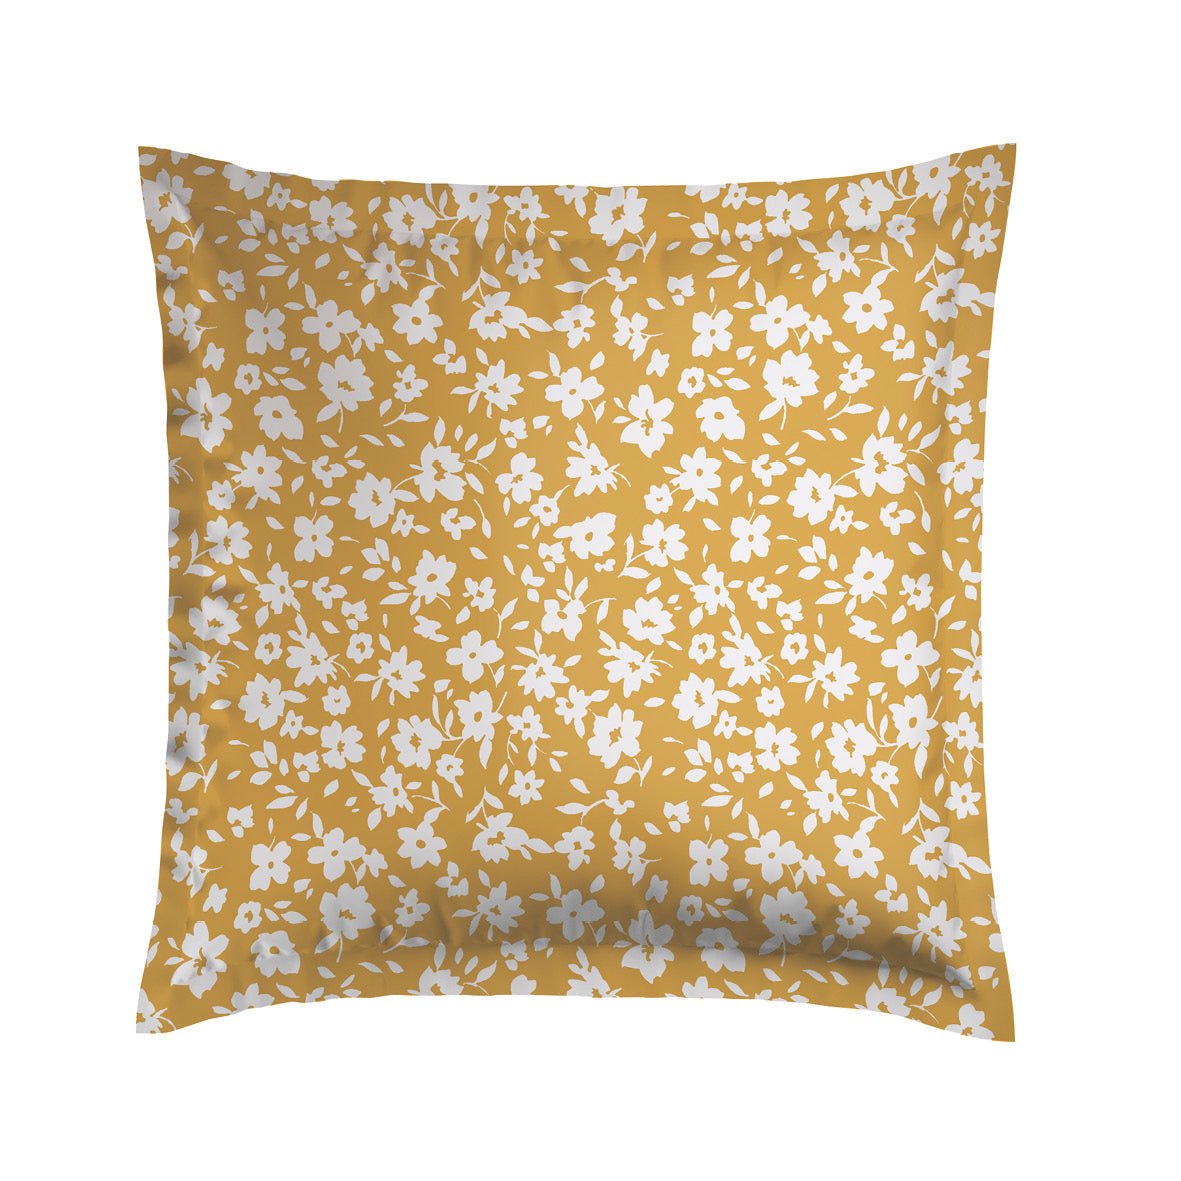 Pillowcase(s) cotton satin - Les Yeux de Suzanne Yellow 2 x (63 x 63 cm)